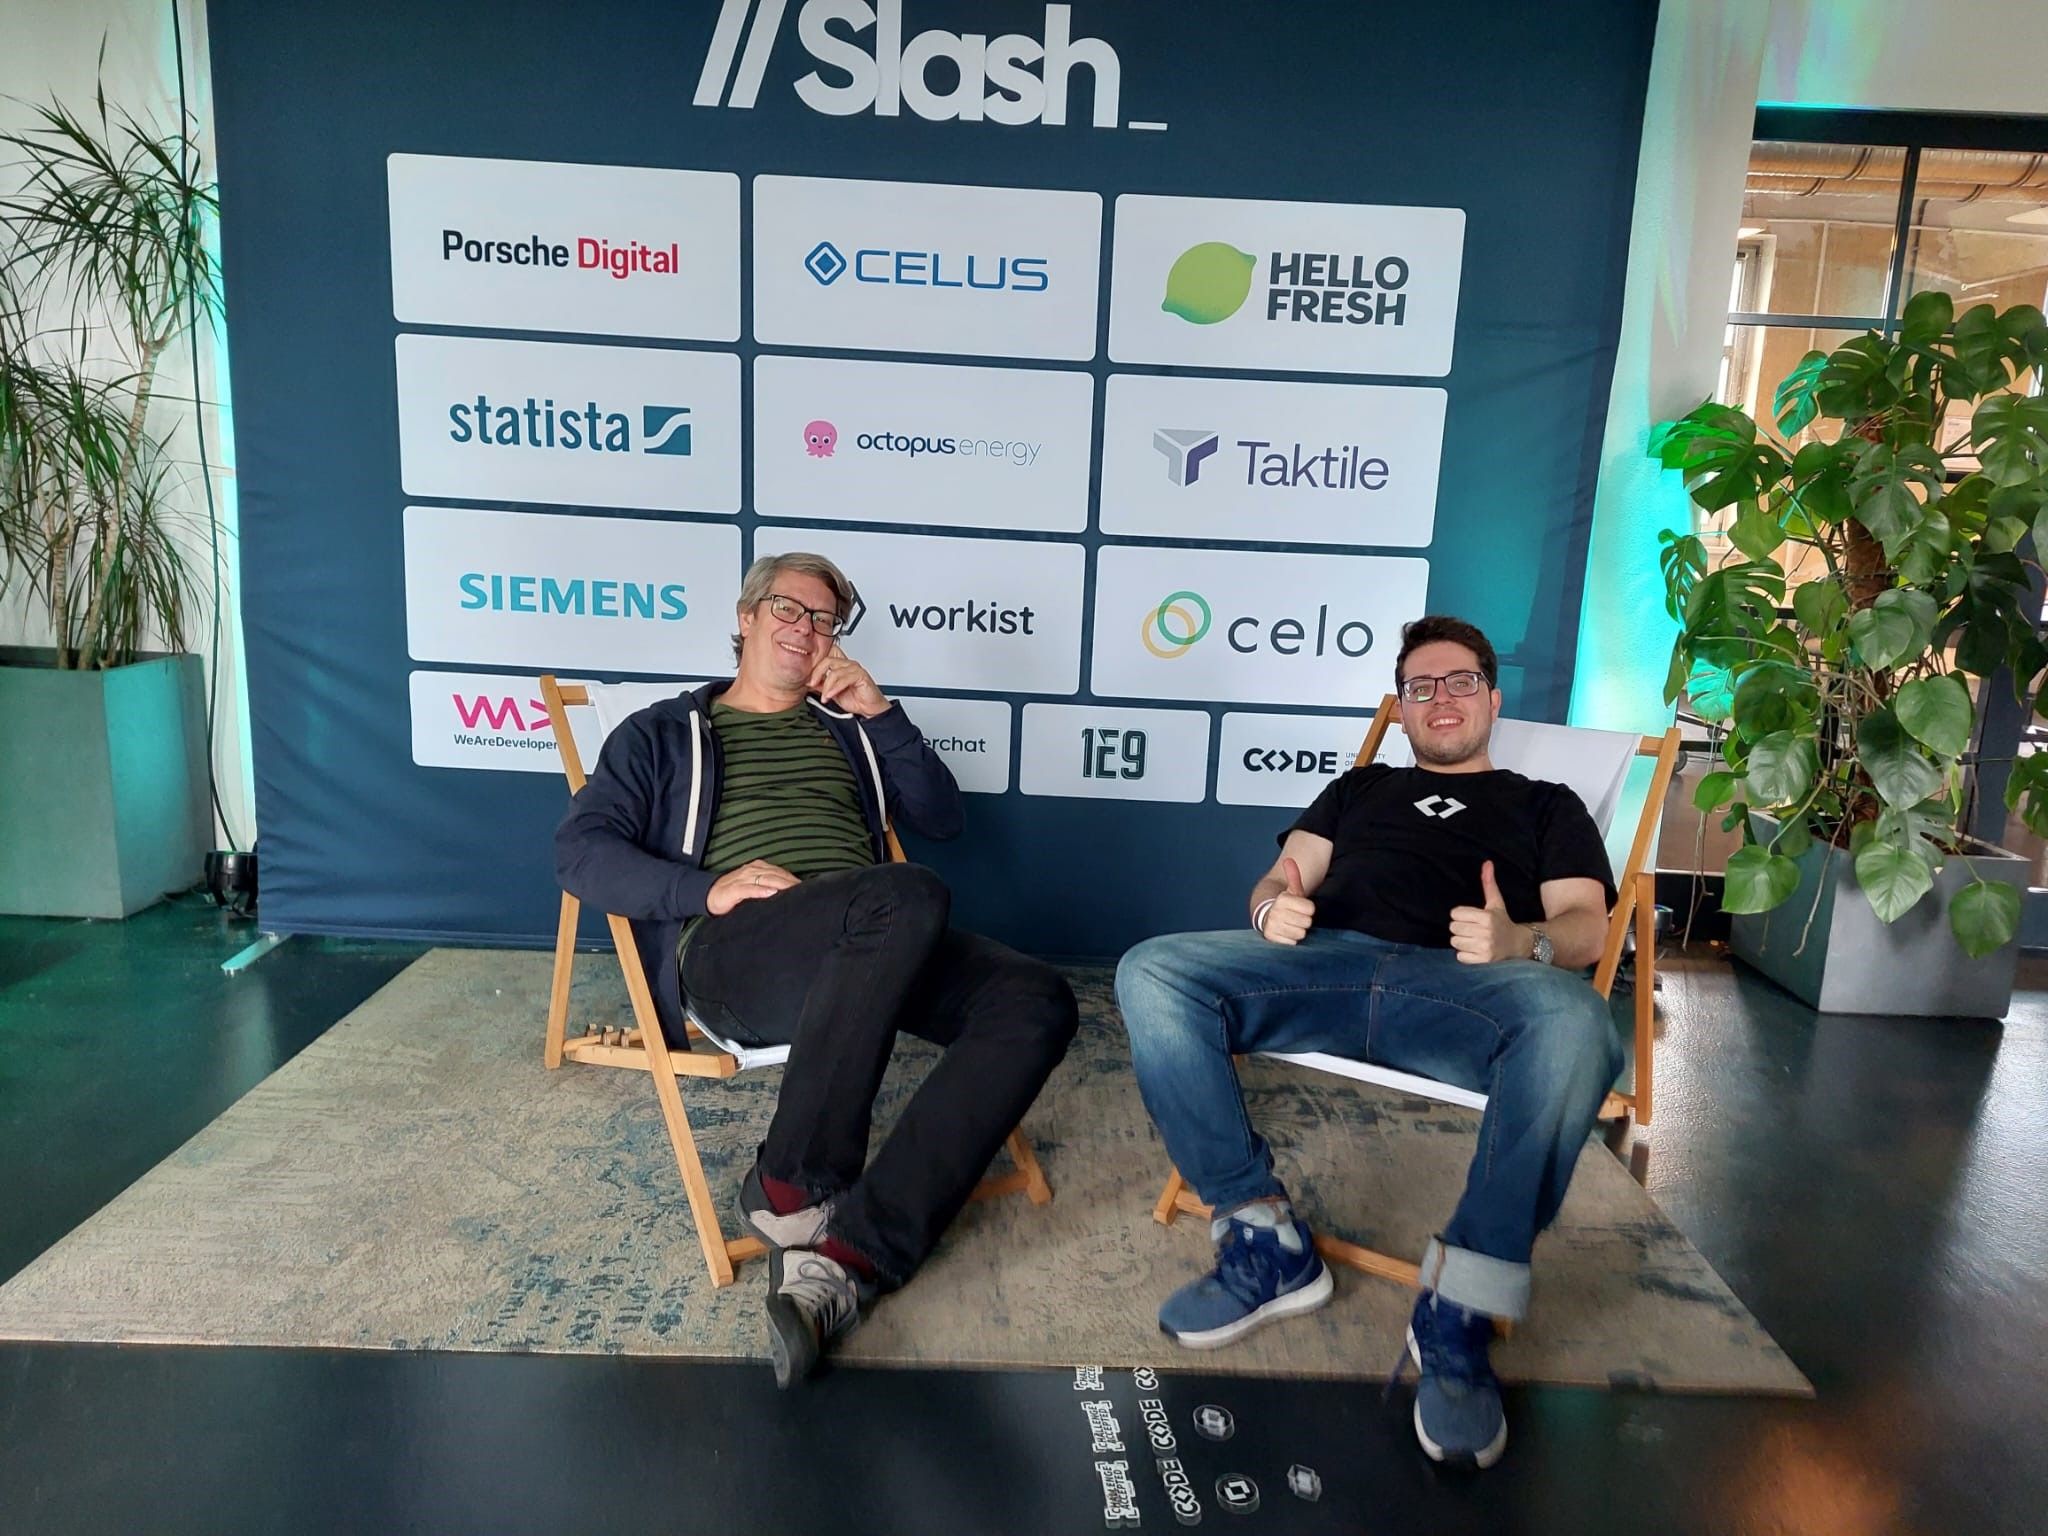 //Slash Hackathon 2022 in Berlin